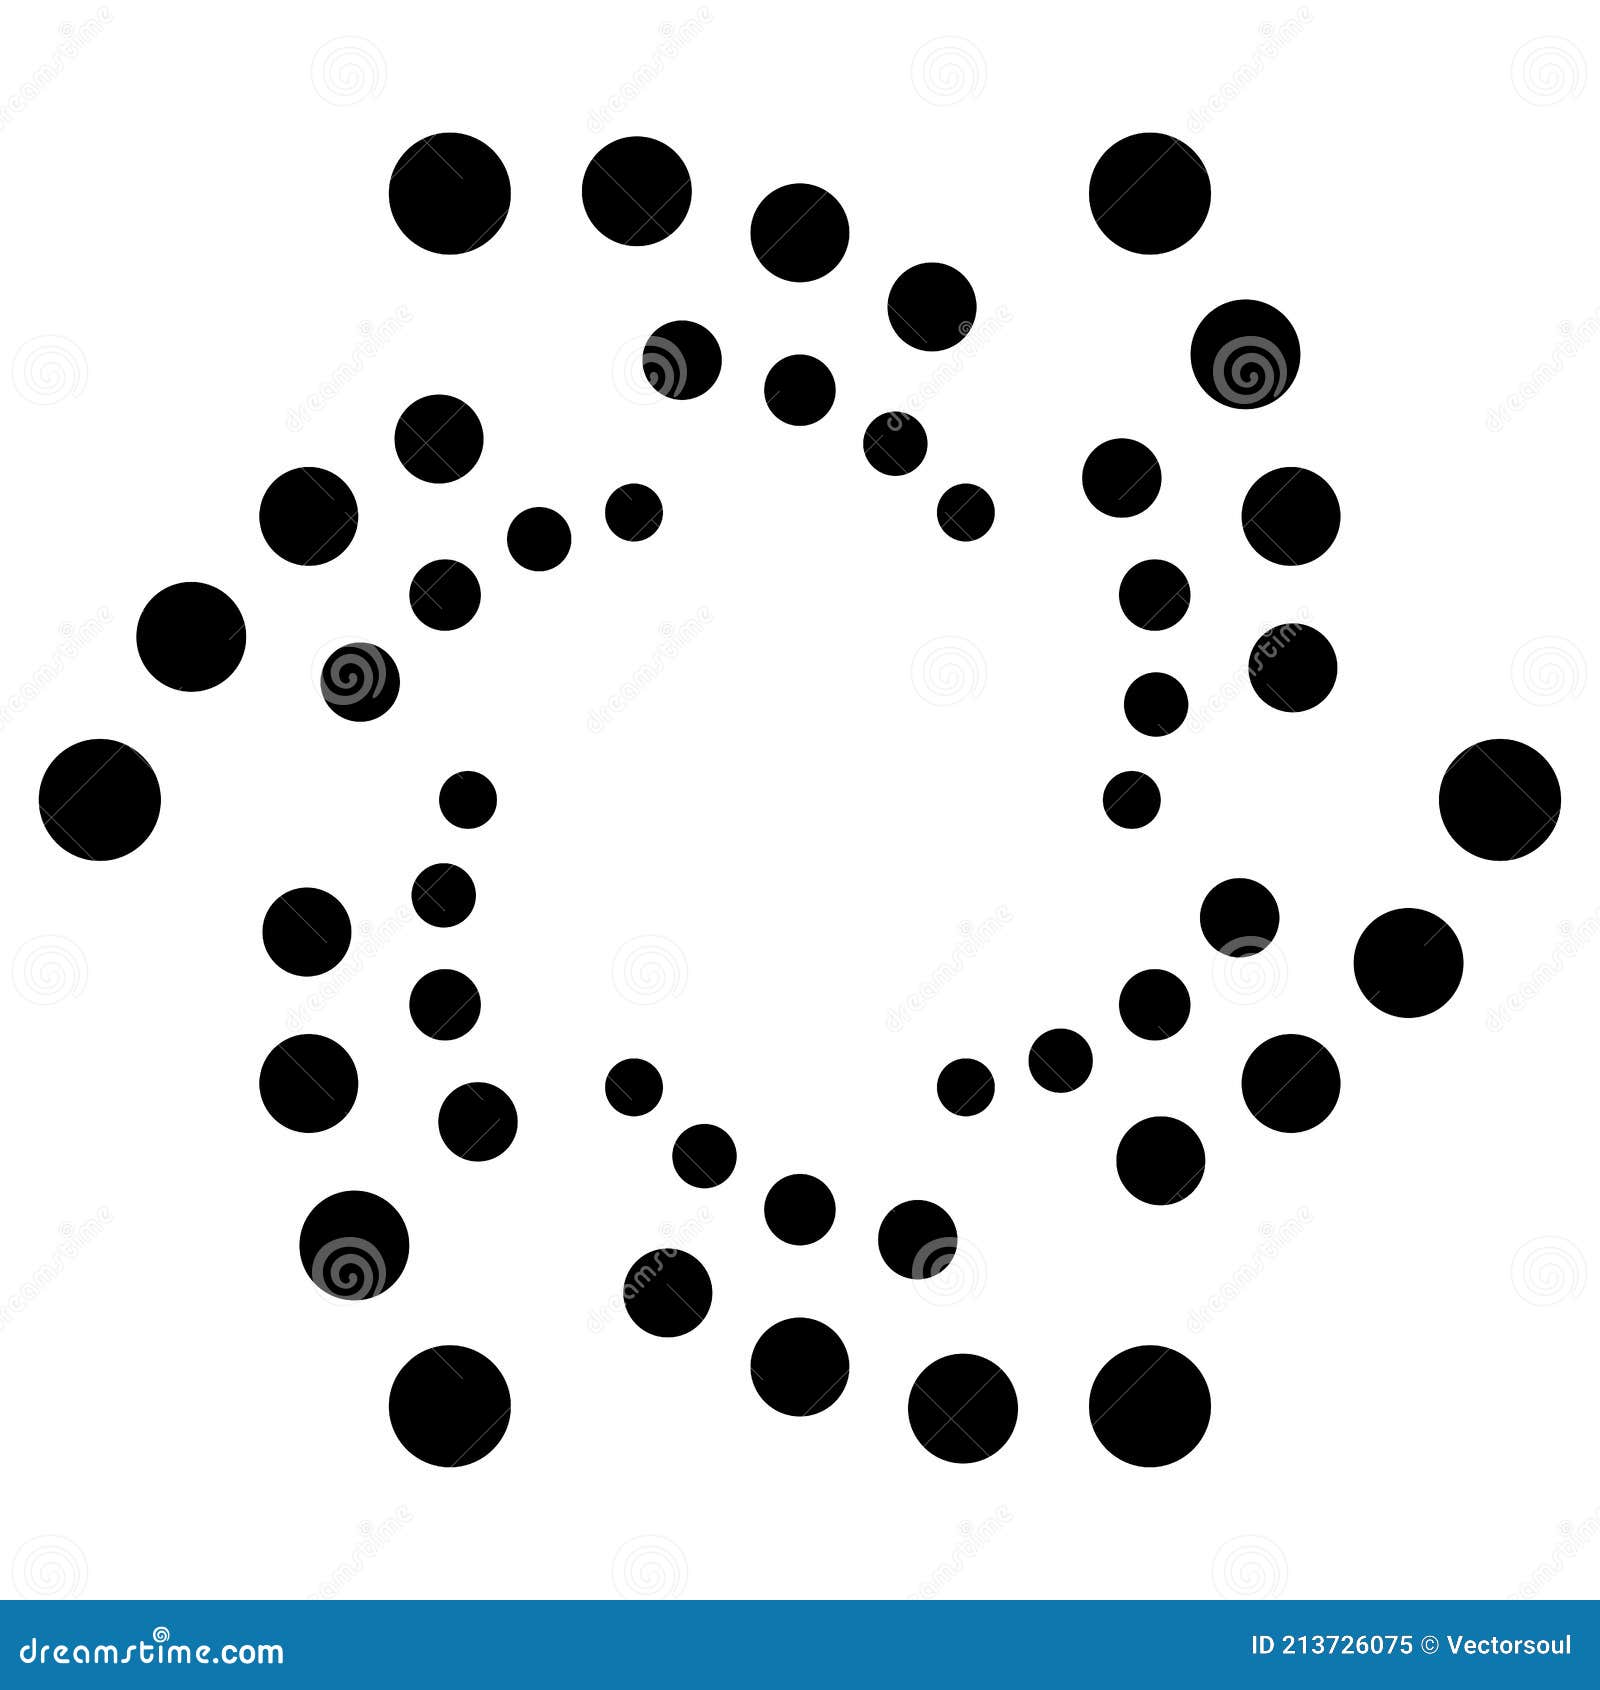 Simple Graphic Made of Dots, Circles. Basic Dotted Circular Mandala ...